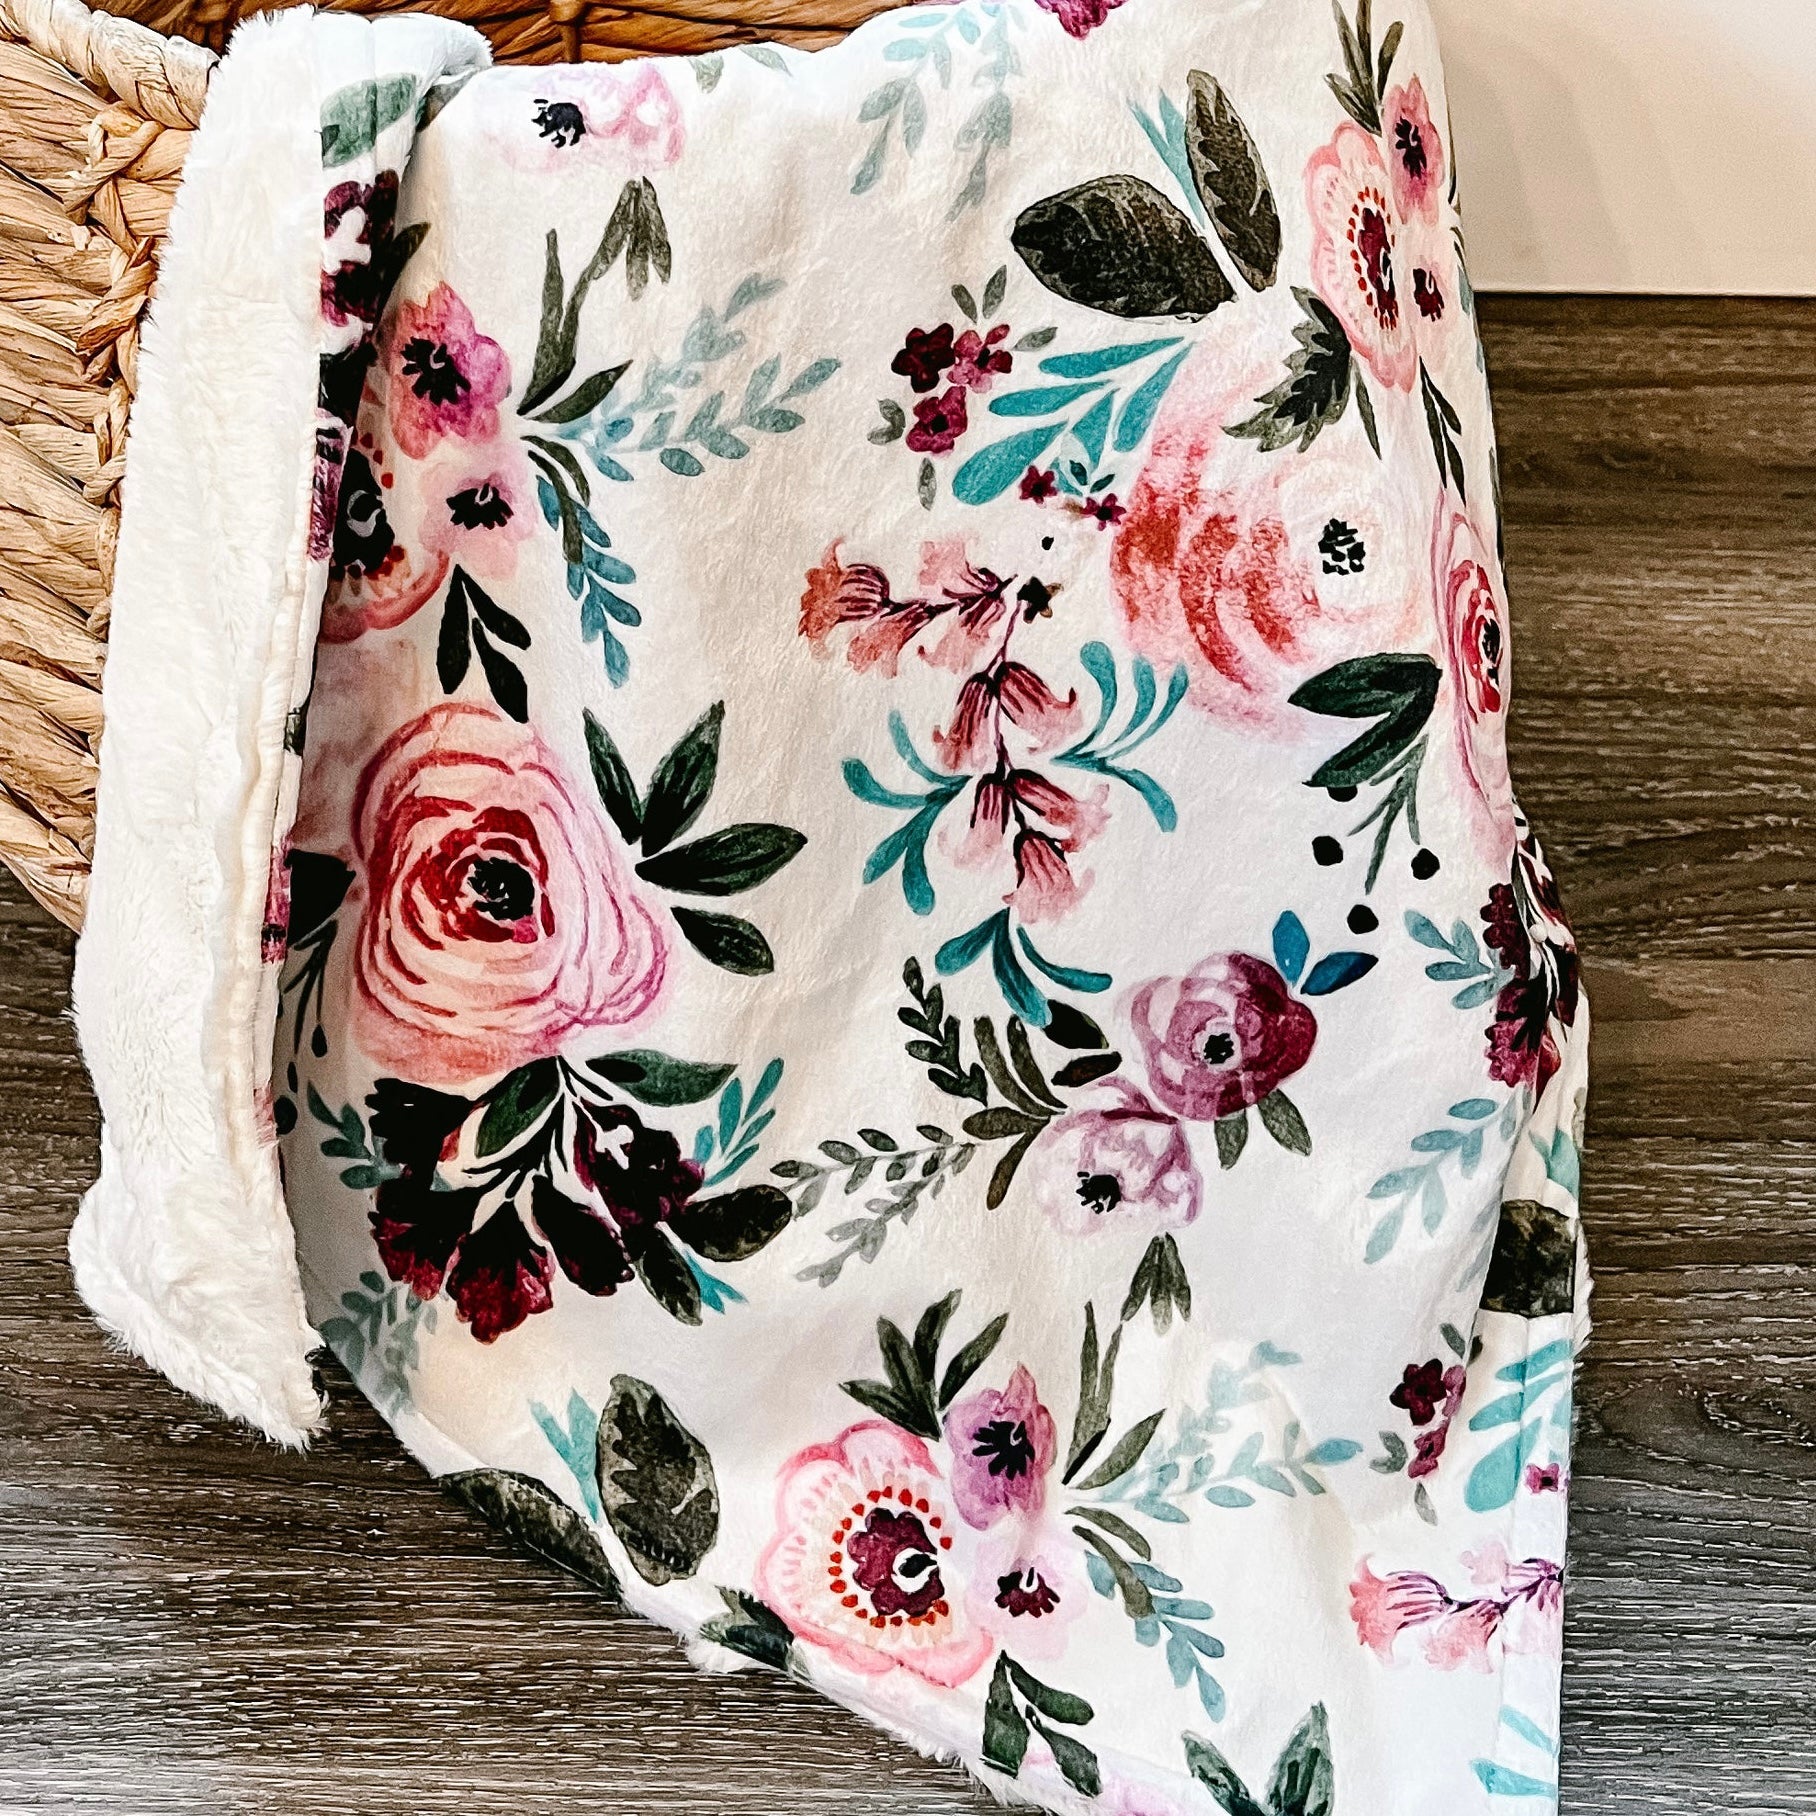 Vintage floral minky blanket 50”